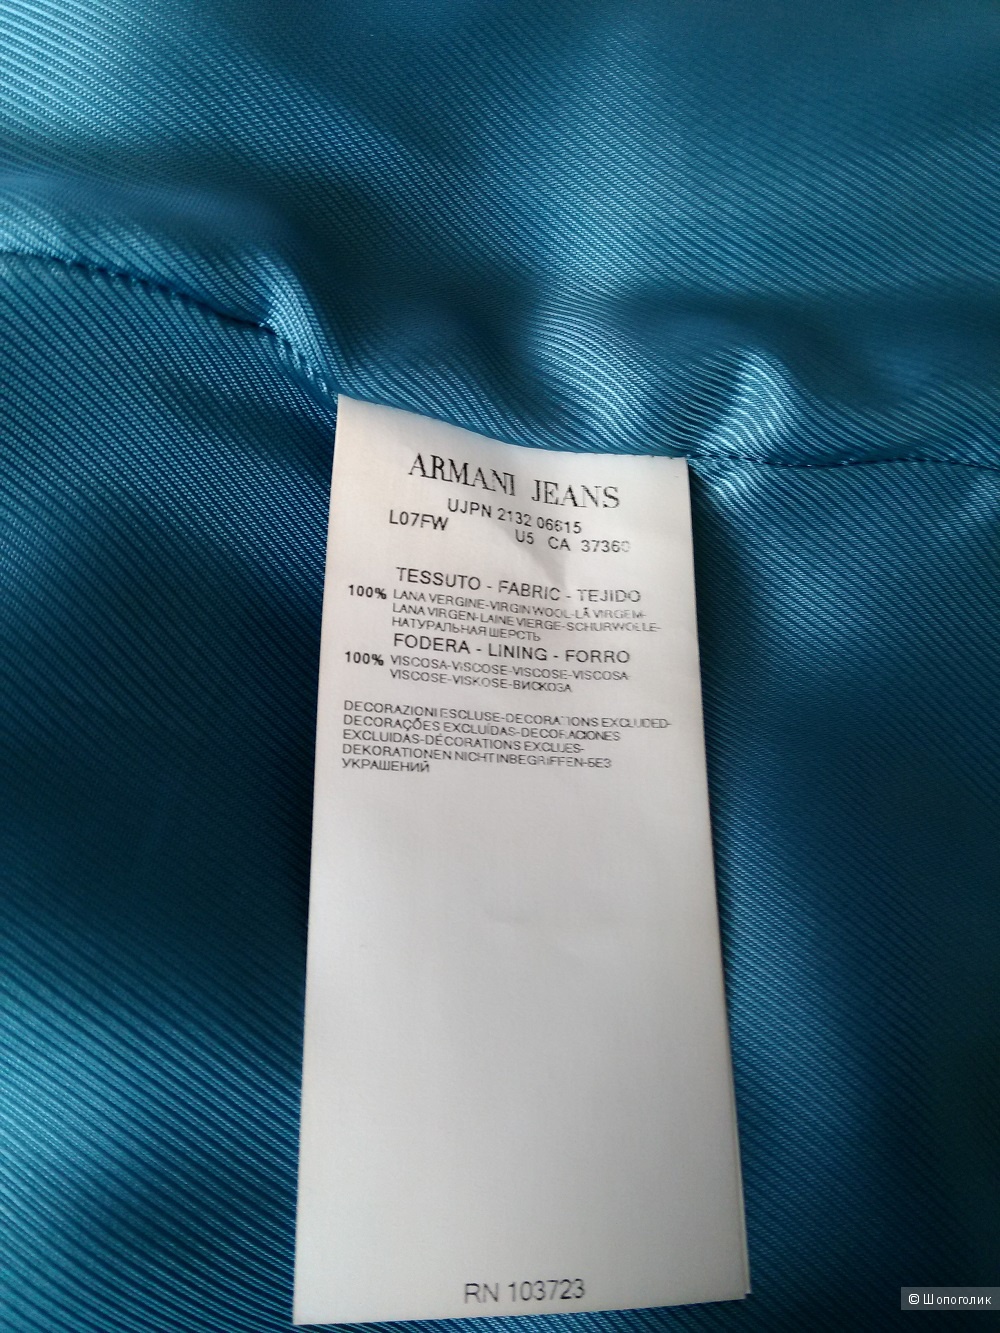 Пальто Armani Jeans, натуральная шерсть, размер IT 46